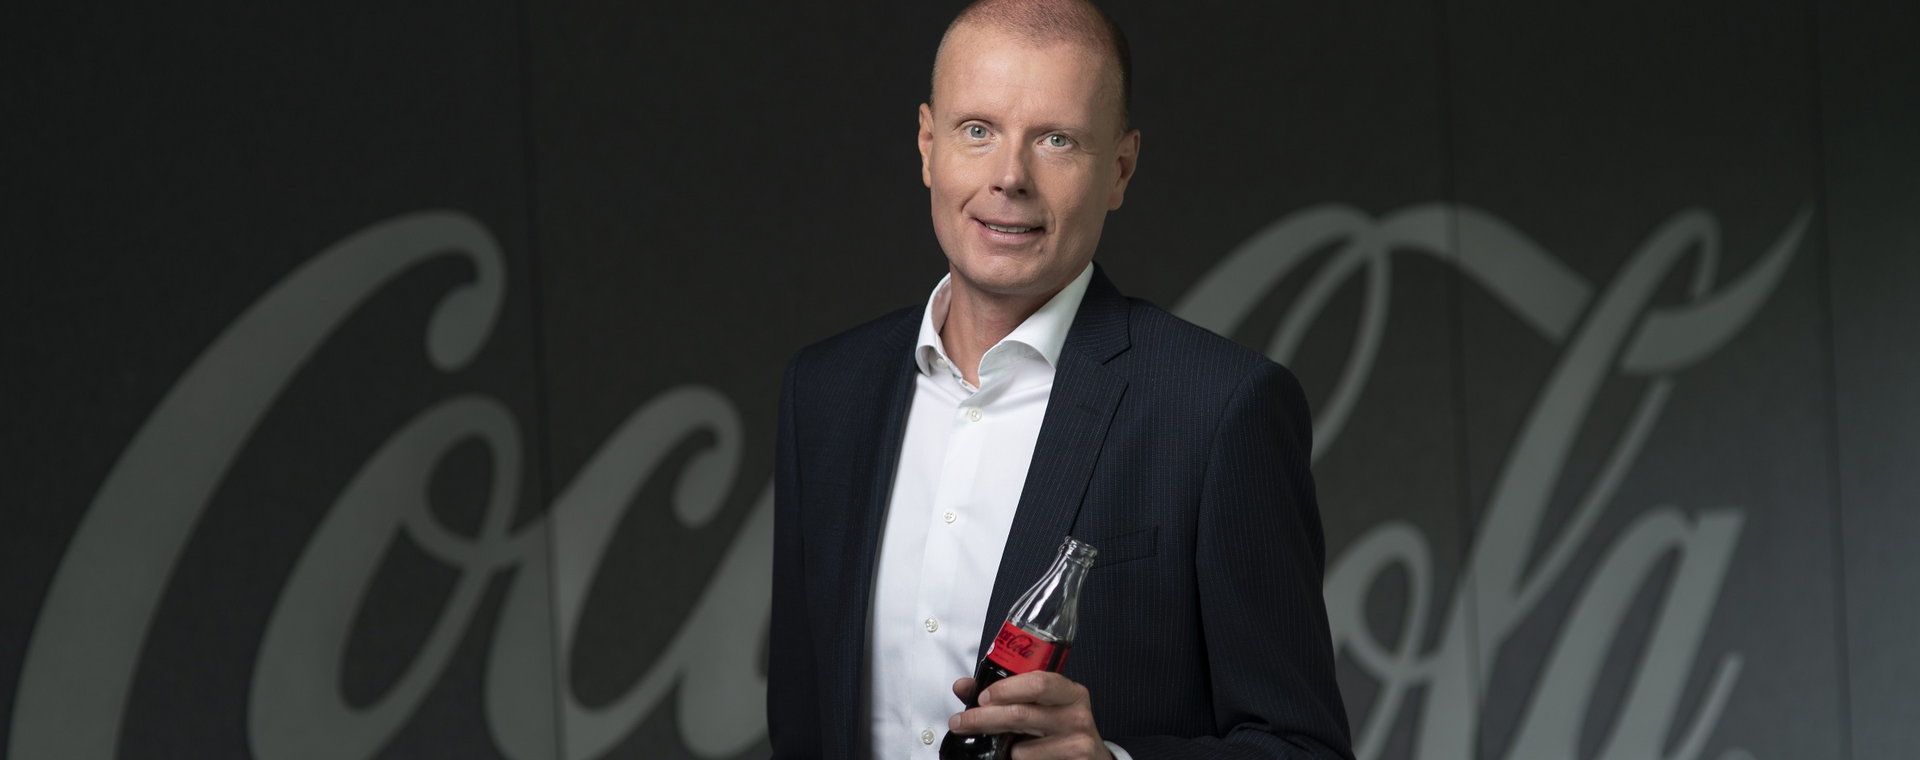 Jaak Mikkel, prezes Coca-Cola HBC Polska i kraje bałtyckie opowiada o tym, jak koncern postrzega obecną sytuację gospodarczą i jak przekłada się ona na napoje firmy.